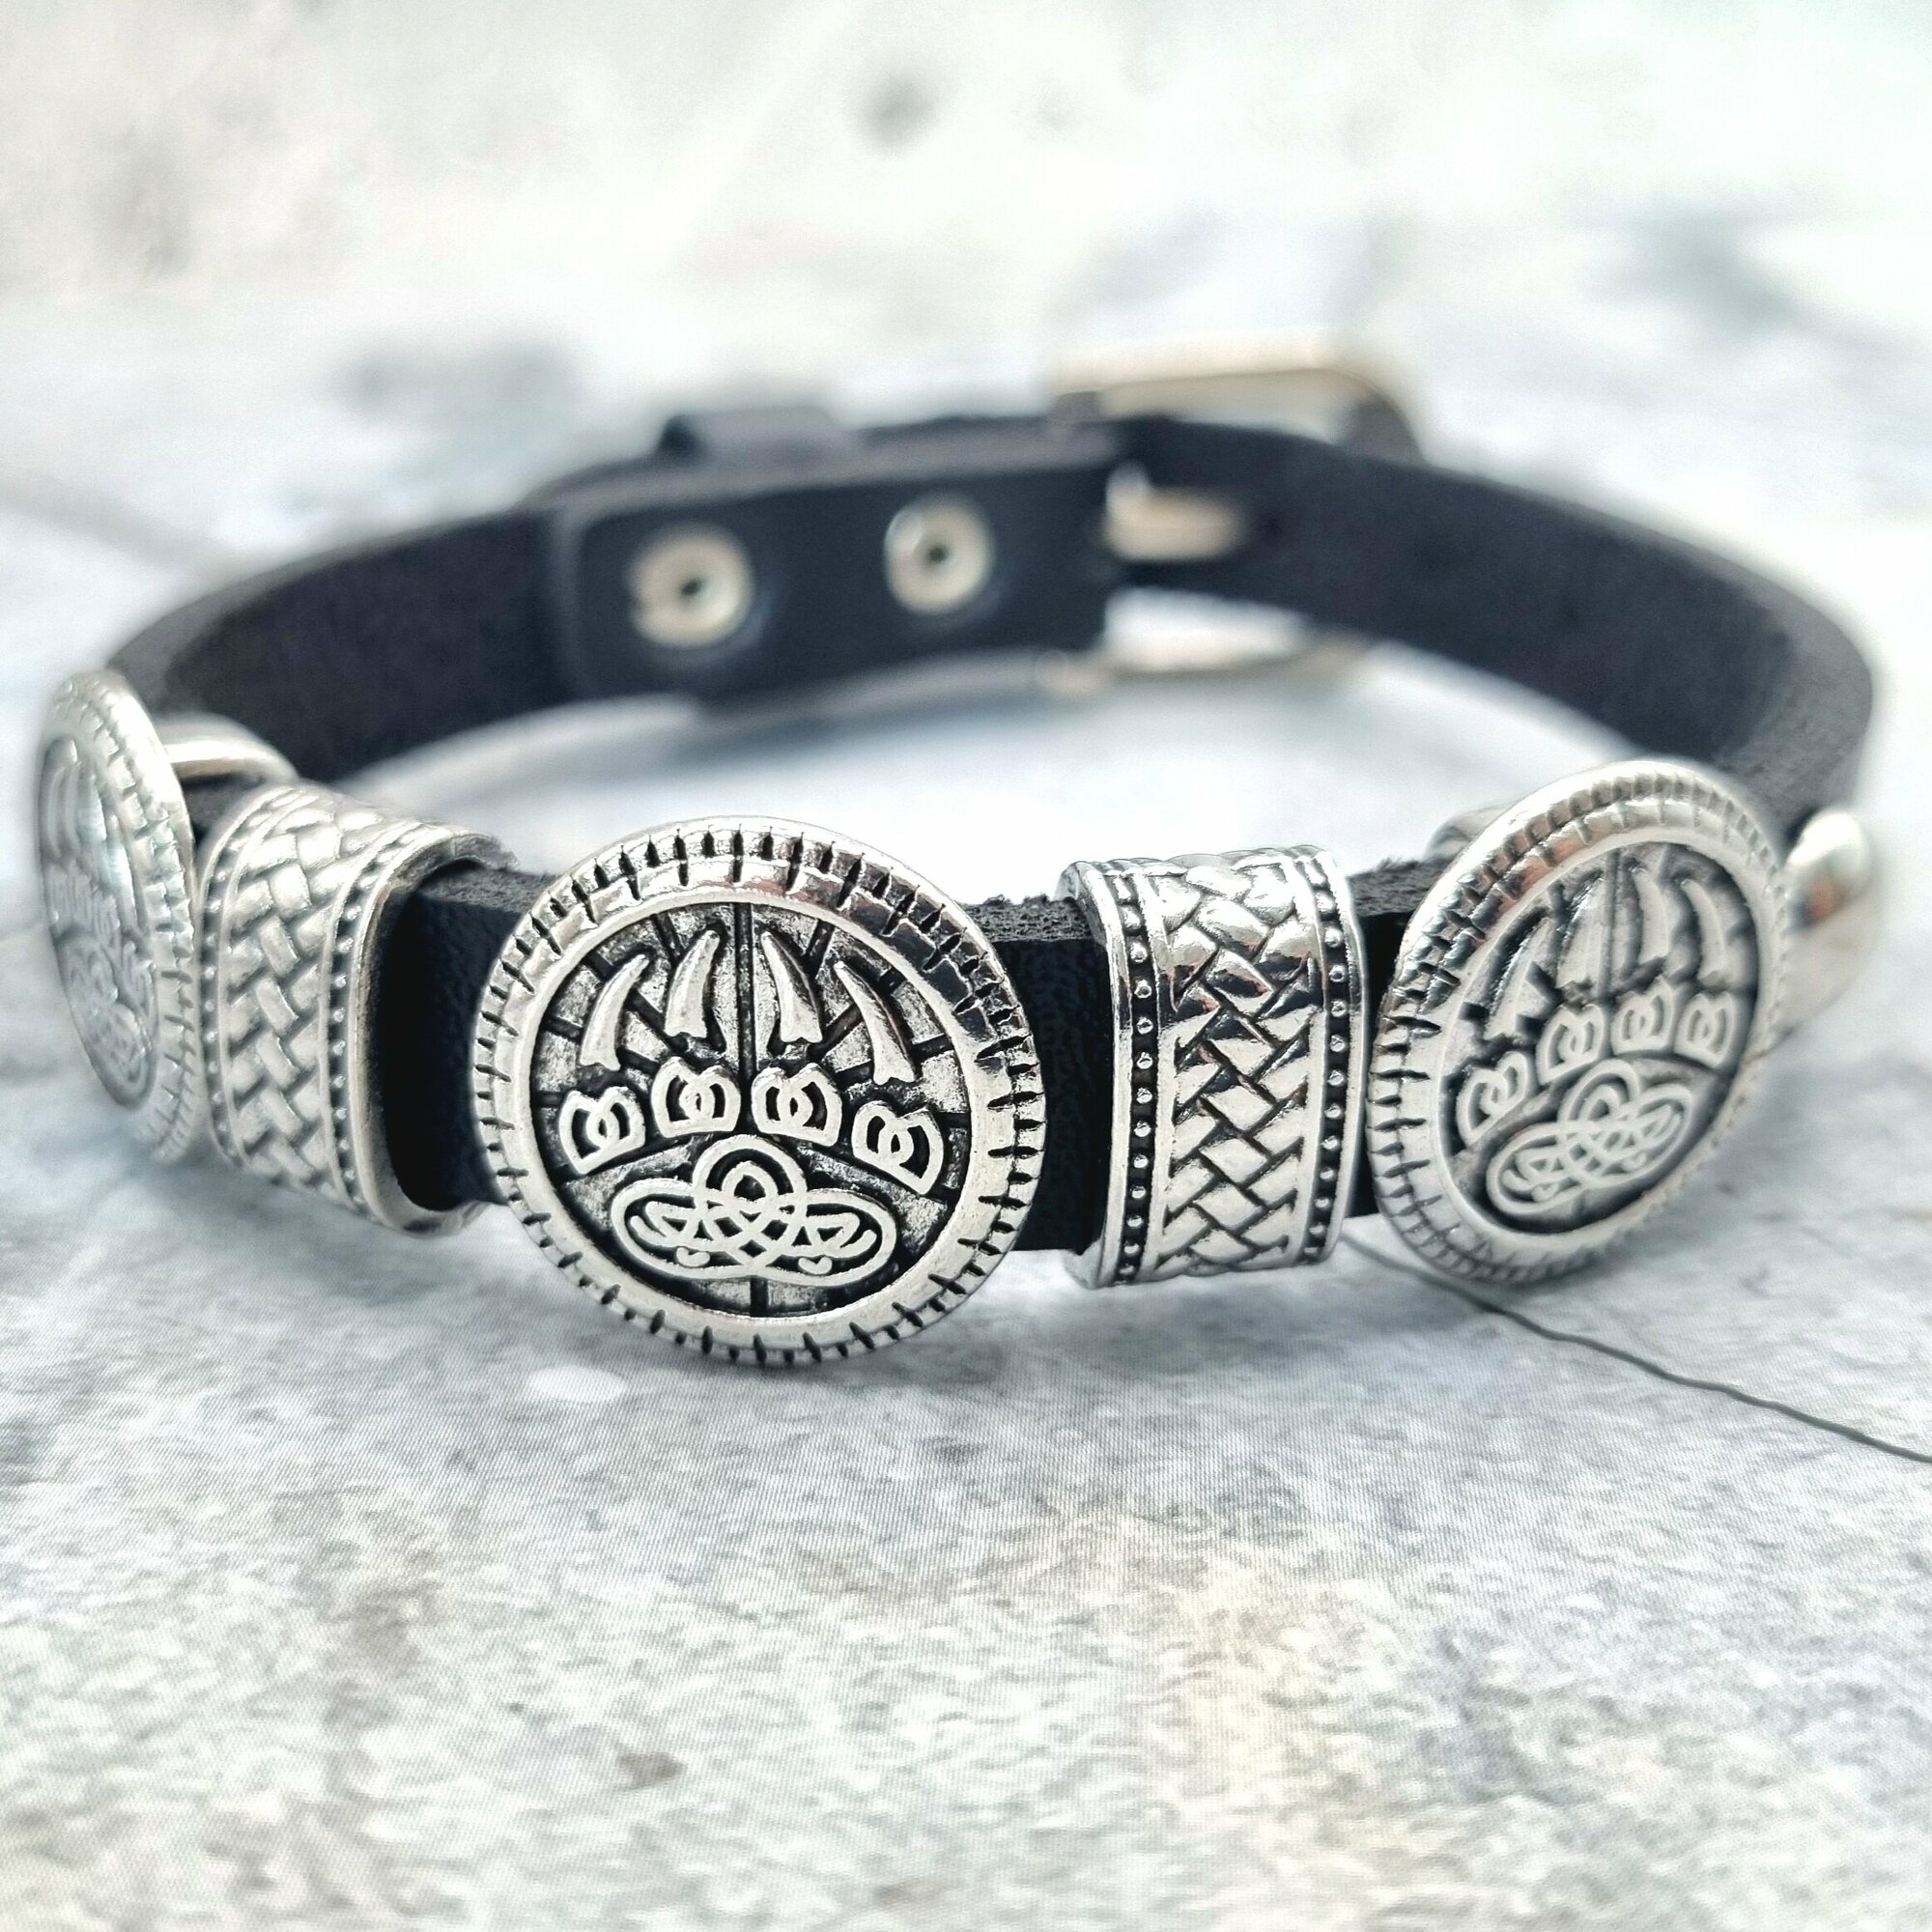 Славянский оберег, плетеный браслет Браслет универсальный безразмерный, кожаный, бижутерия, украшение на руку, металл